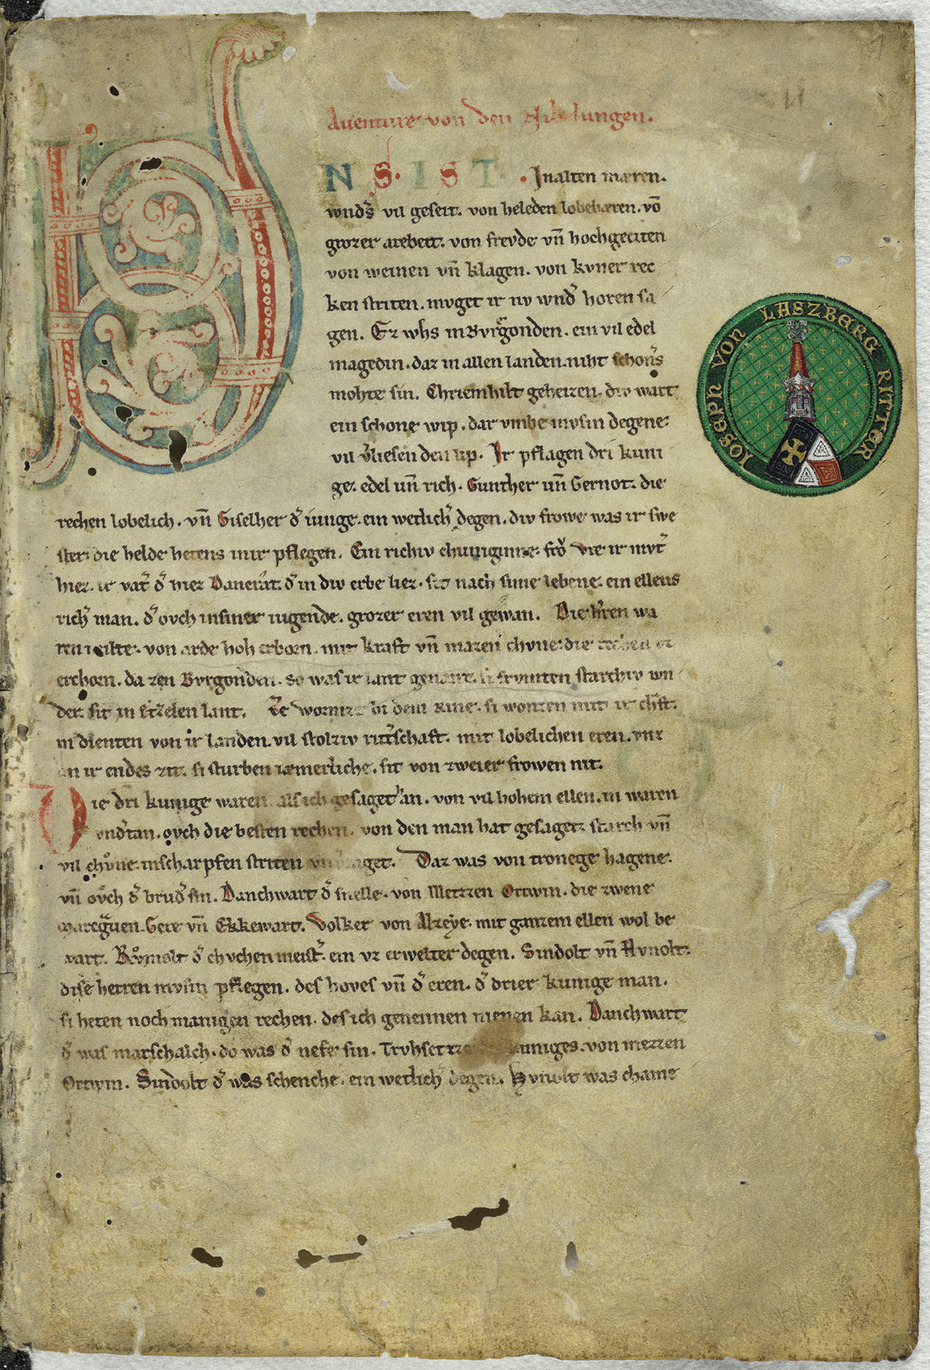 Blatt 1r der Handschrift C des "Nibelungenliedes" (2. Viertel des 13. Jh.)